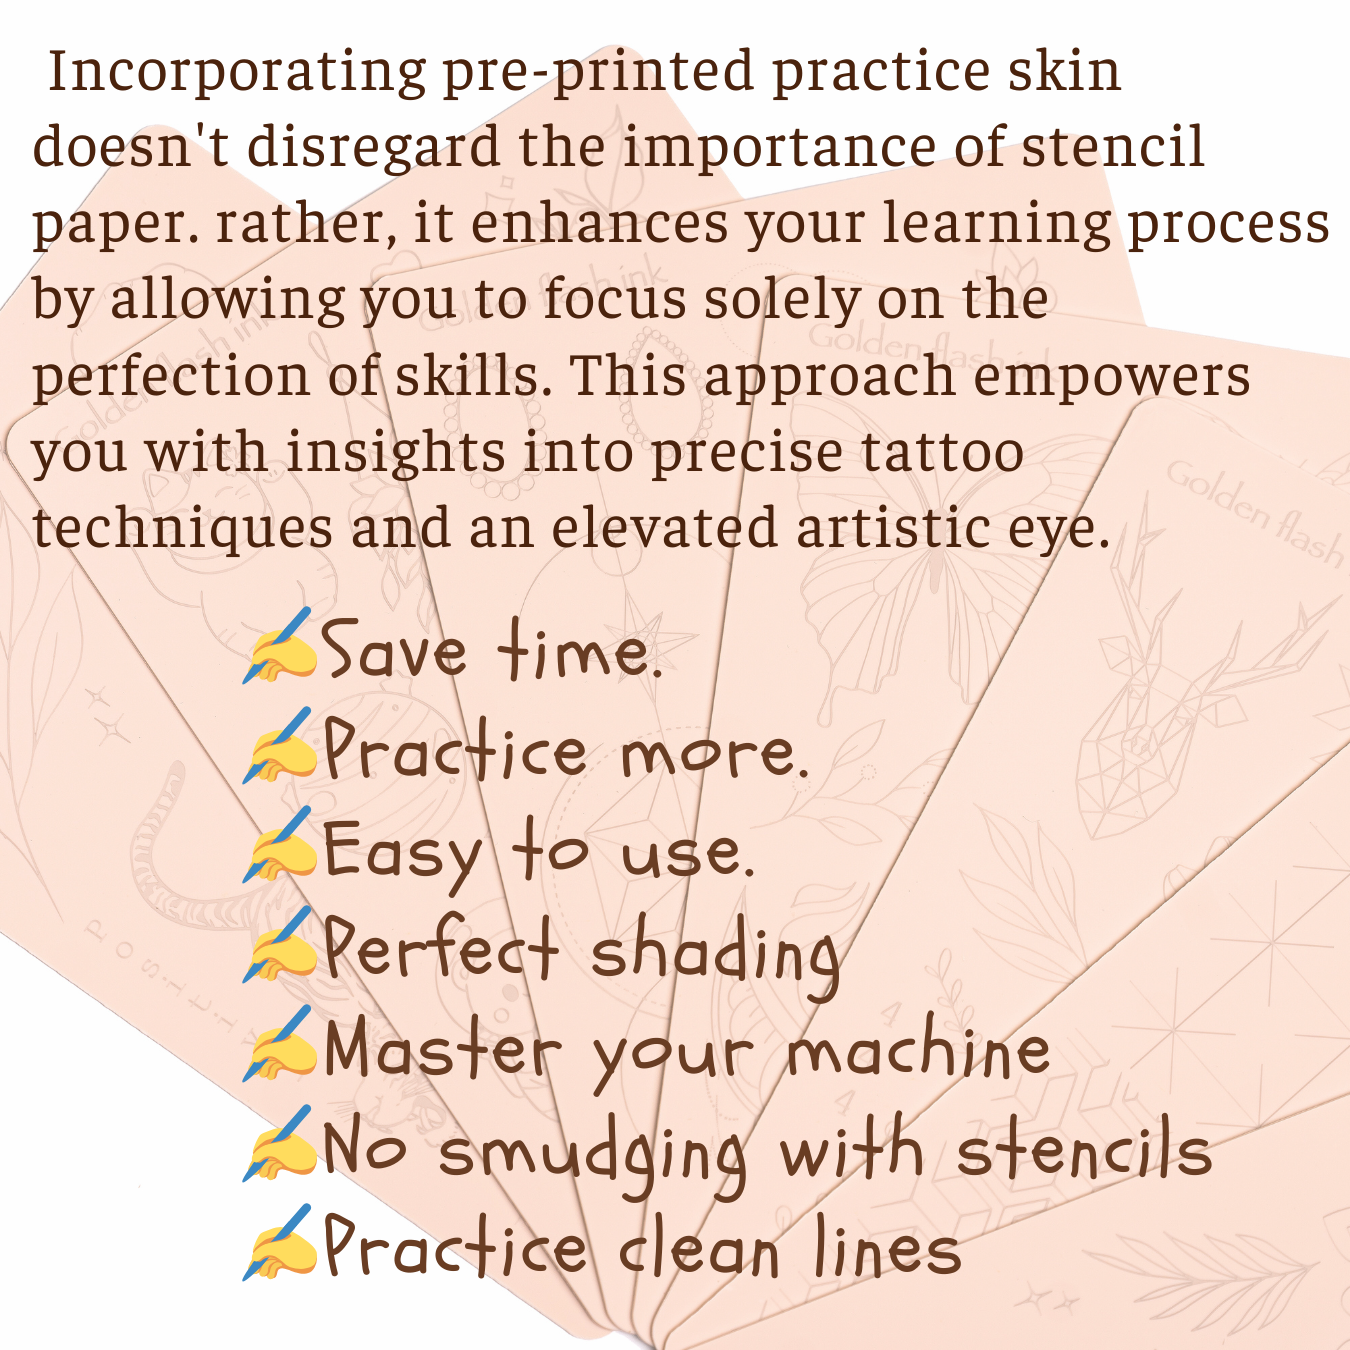 6 Pack Pre-Printed Practice Skin